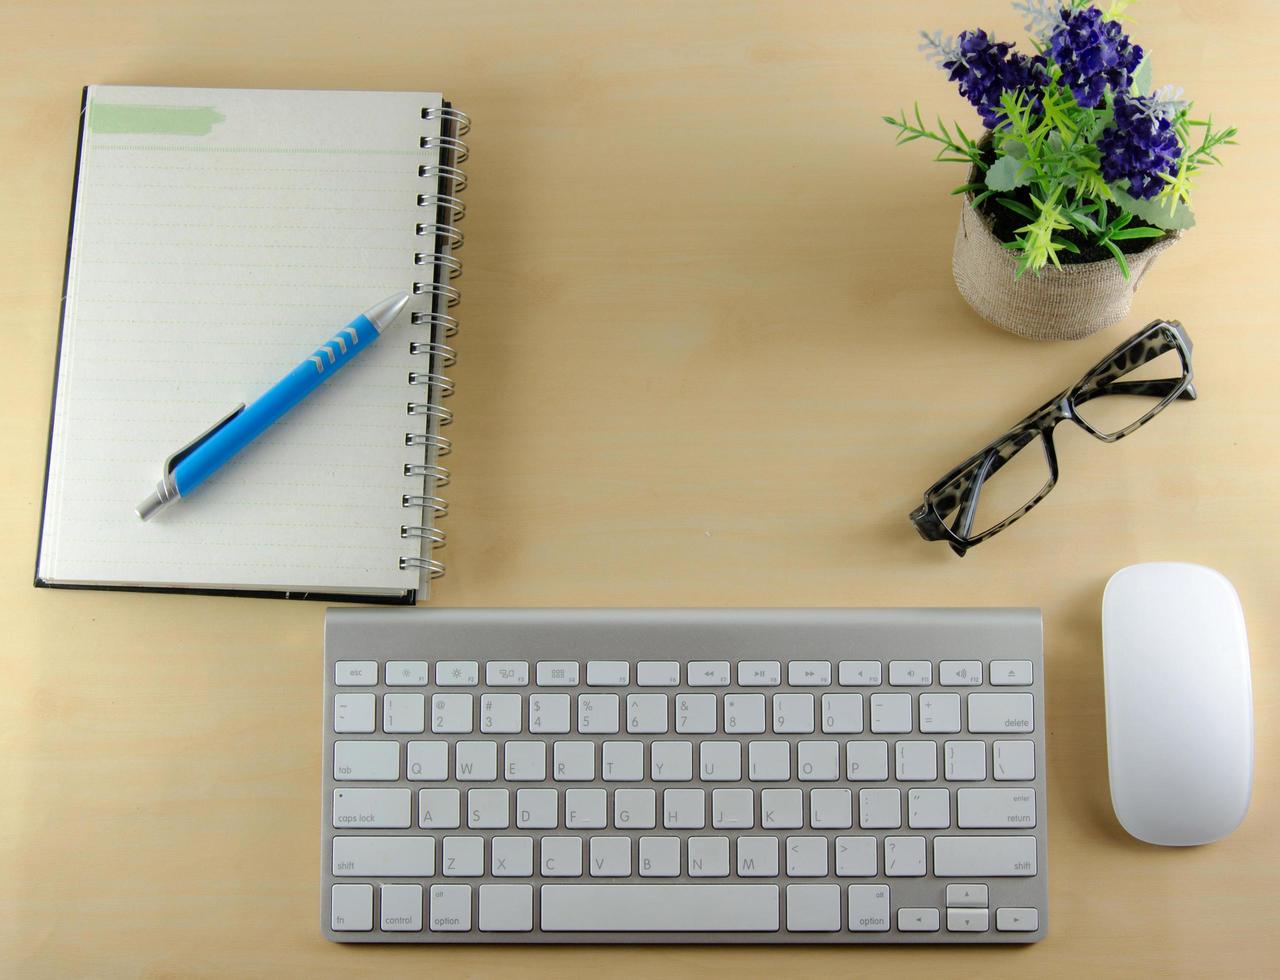 teclado, mouse inalámbrico y computadora portátil en el escritorio foto